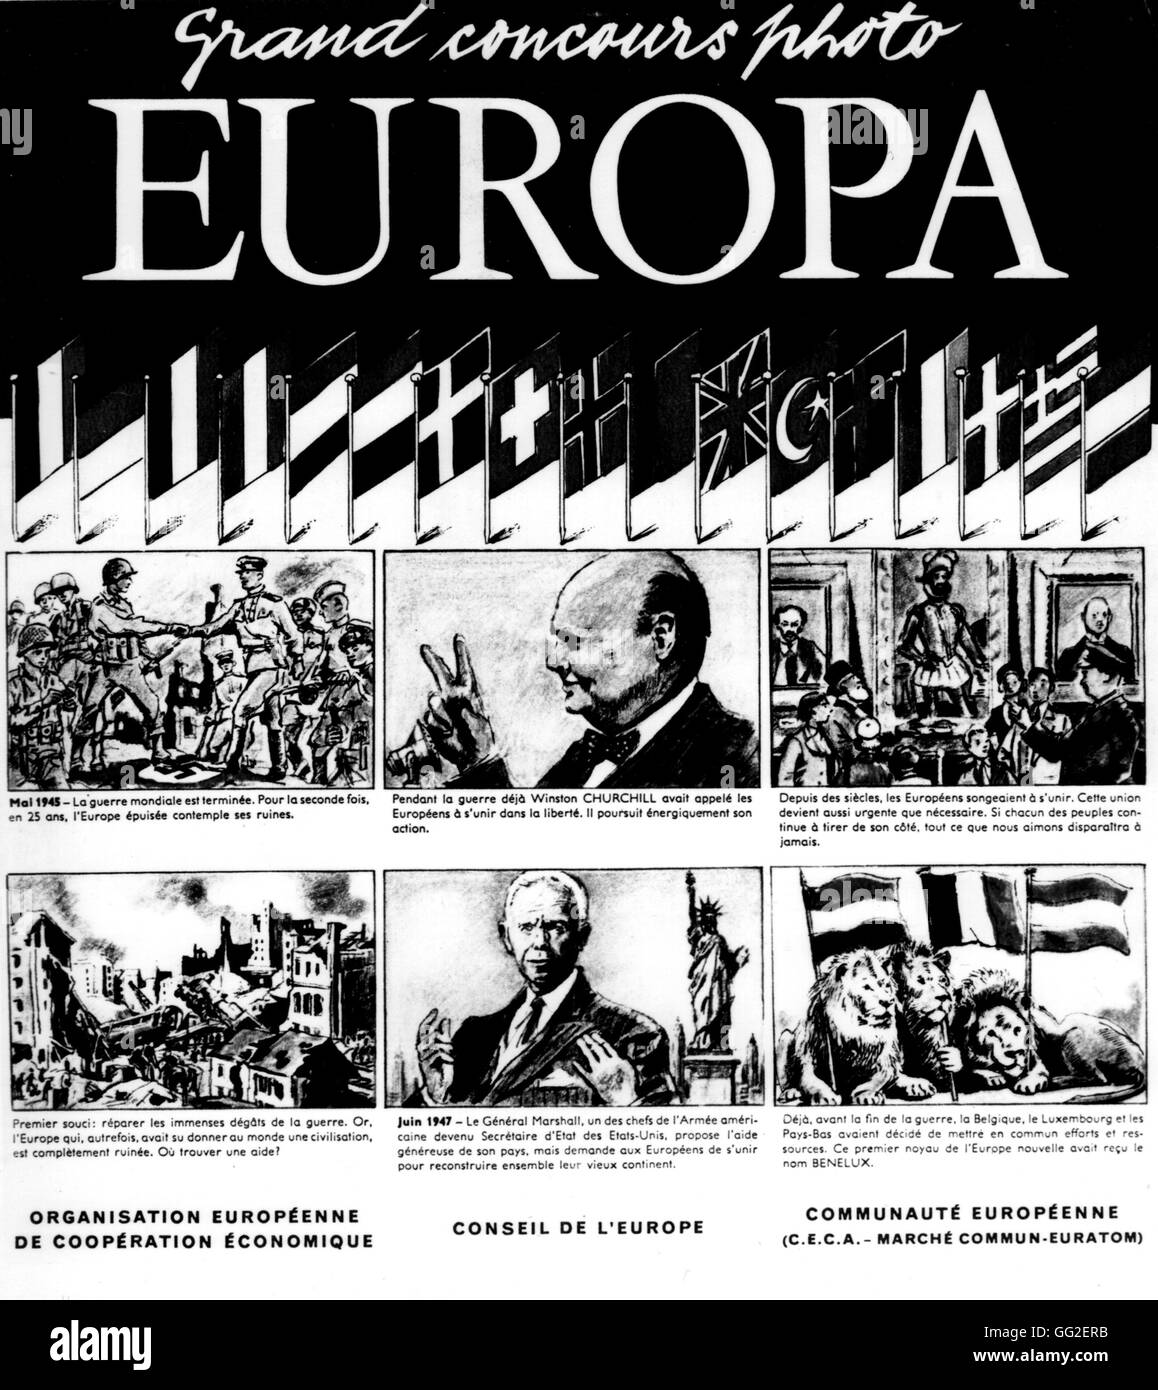 Europa", gran concurso de fotografía sobre la historia del Mercado Común 1958 Foto de stock